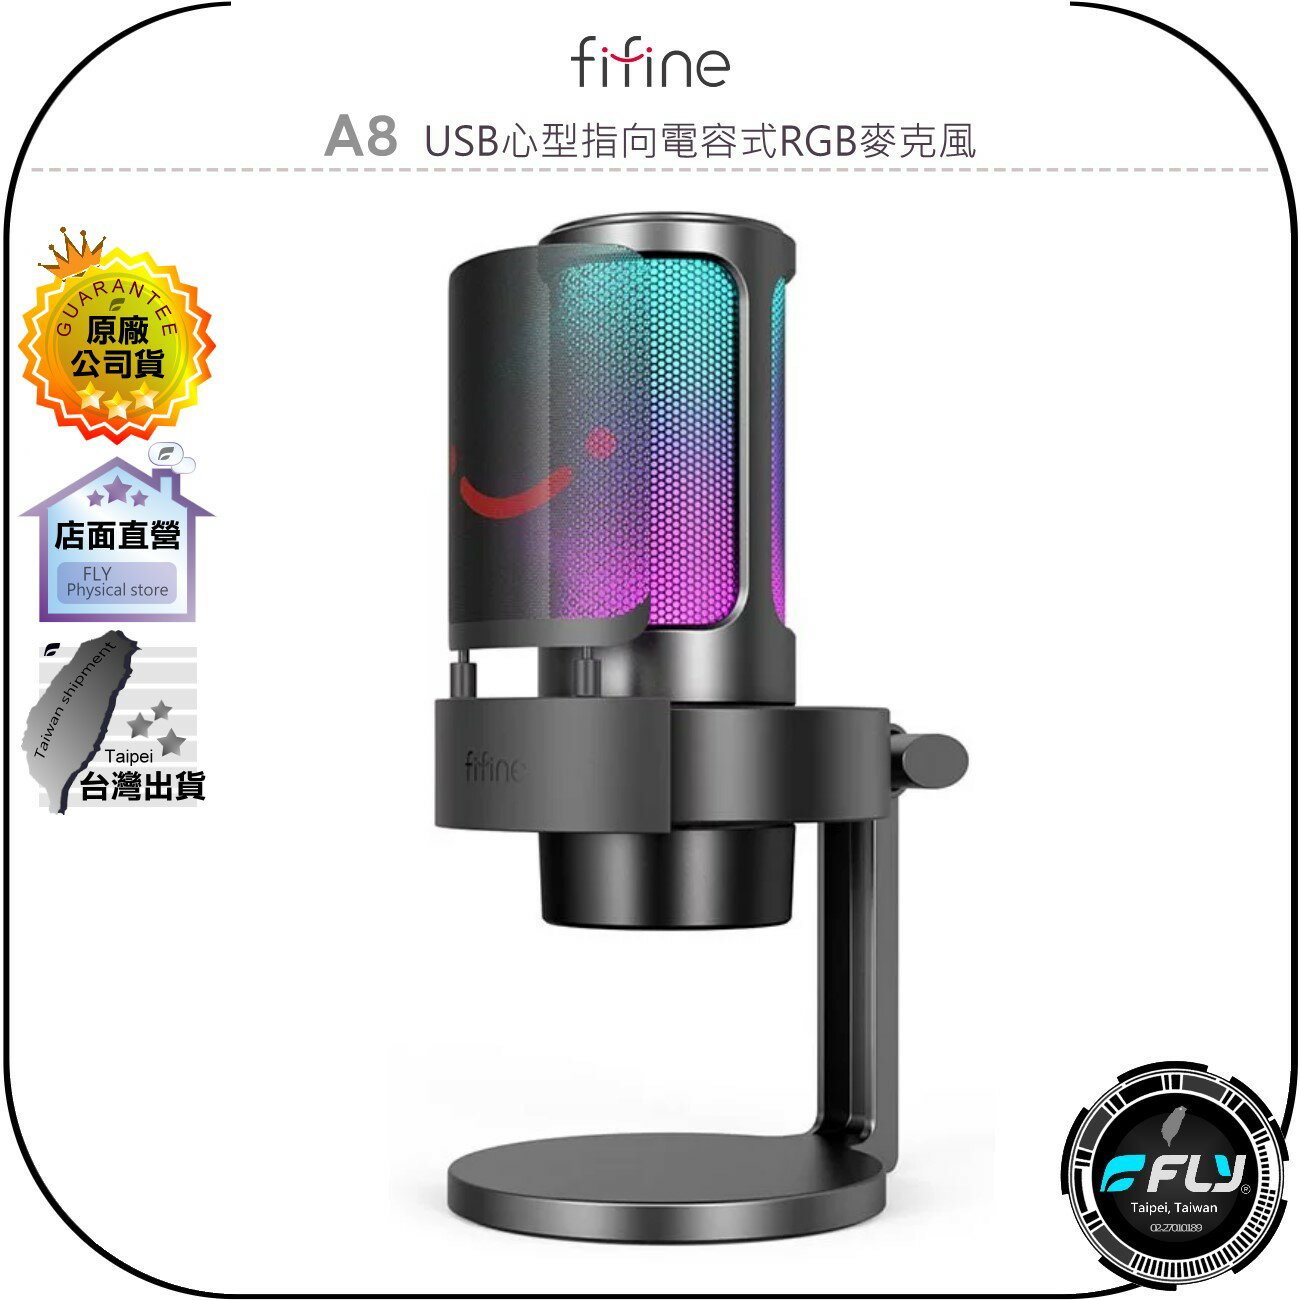 《飛翔無線3C》FIFINE A8 USB心型指向電容式RGB麥克風◉公司貨◉TYPE-C◉耳機孔輸出◉適用手機